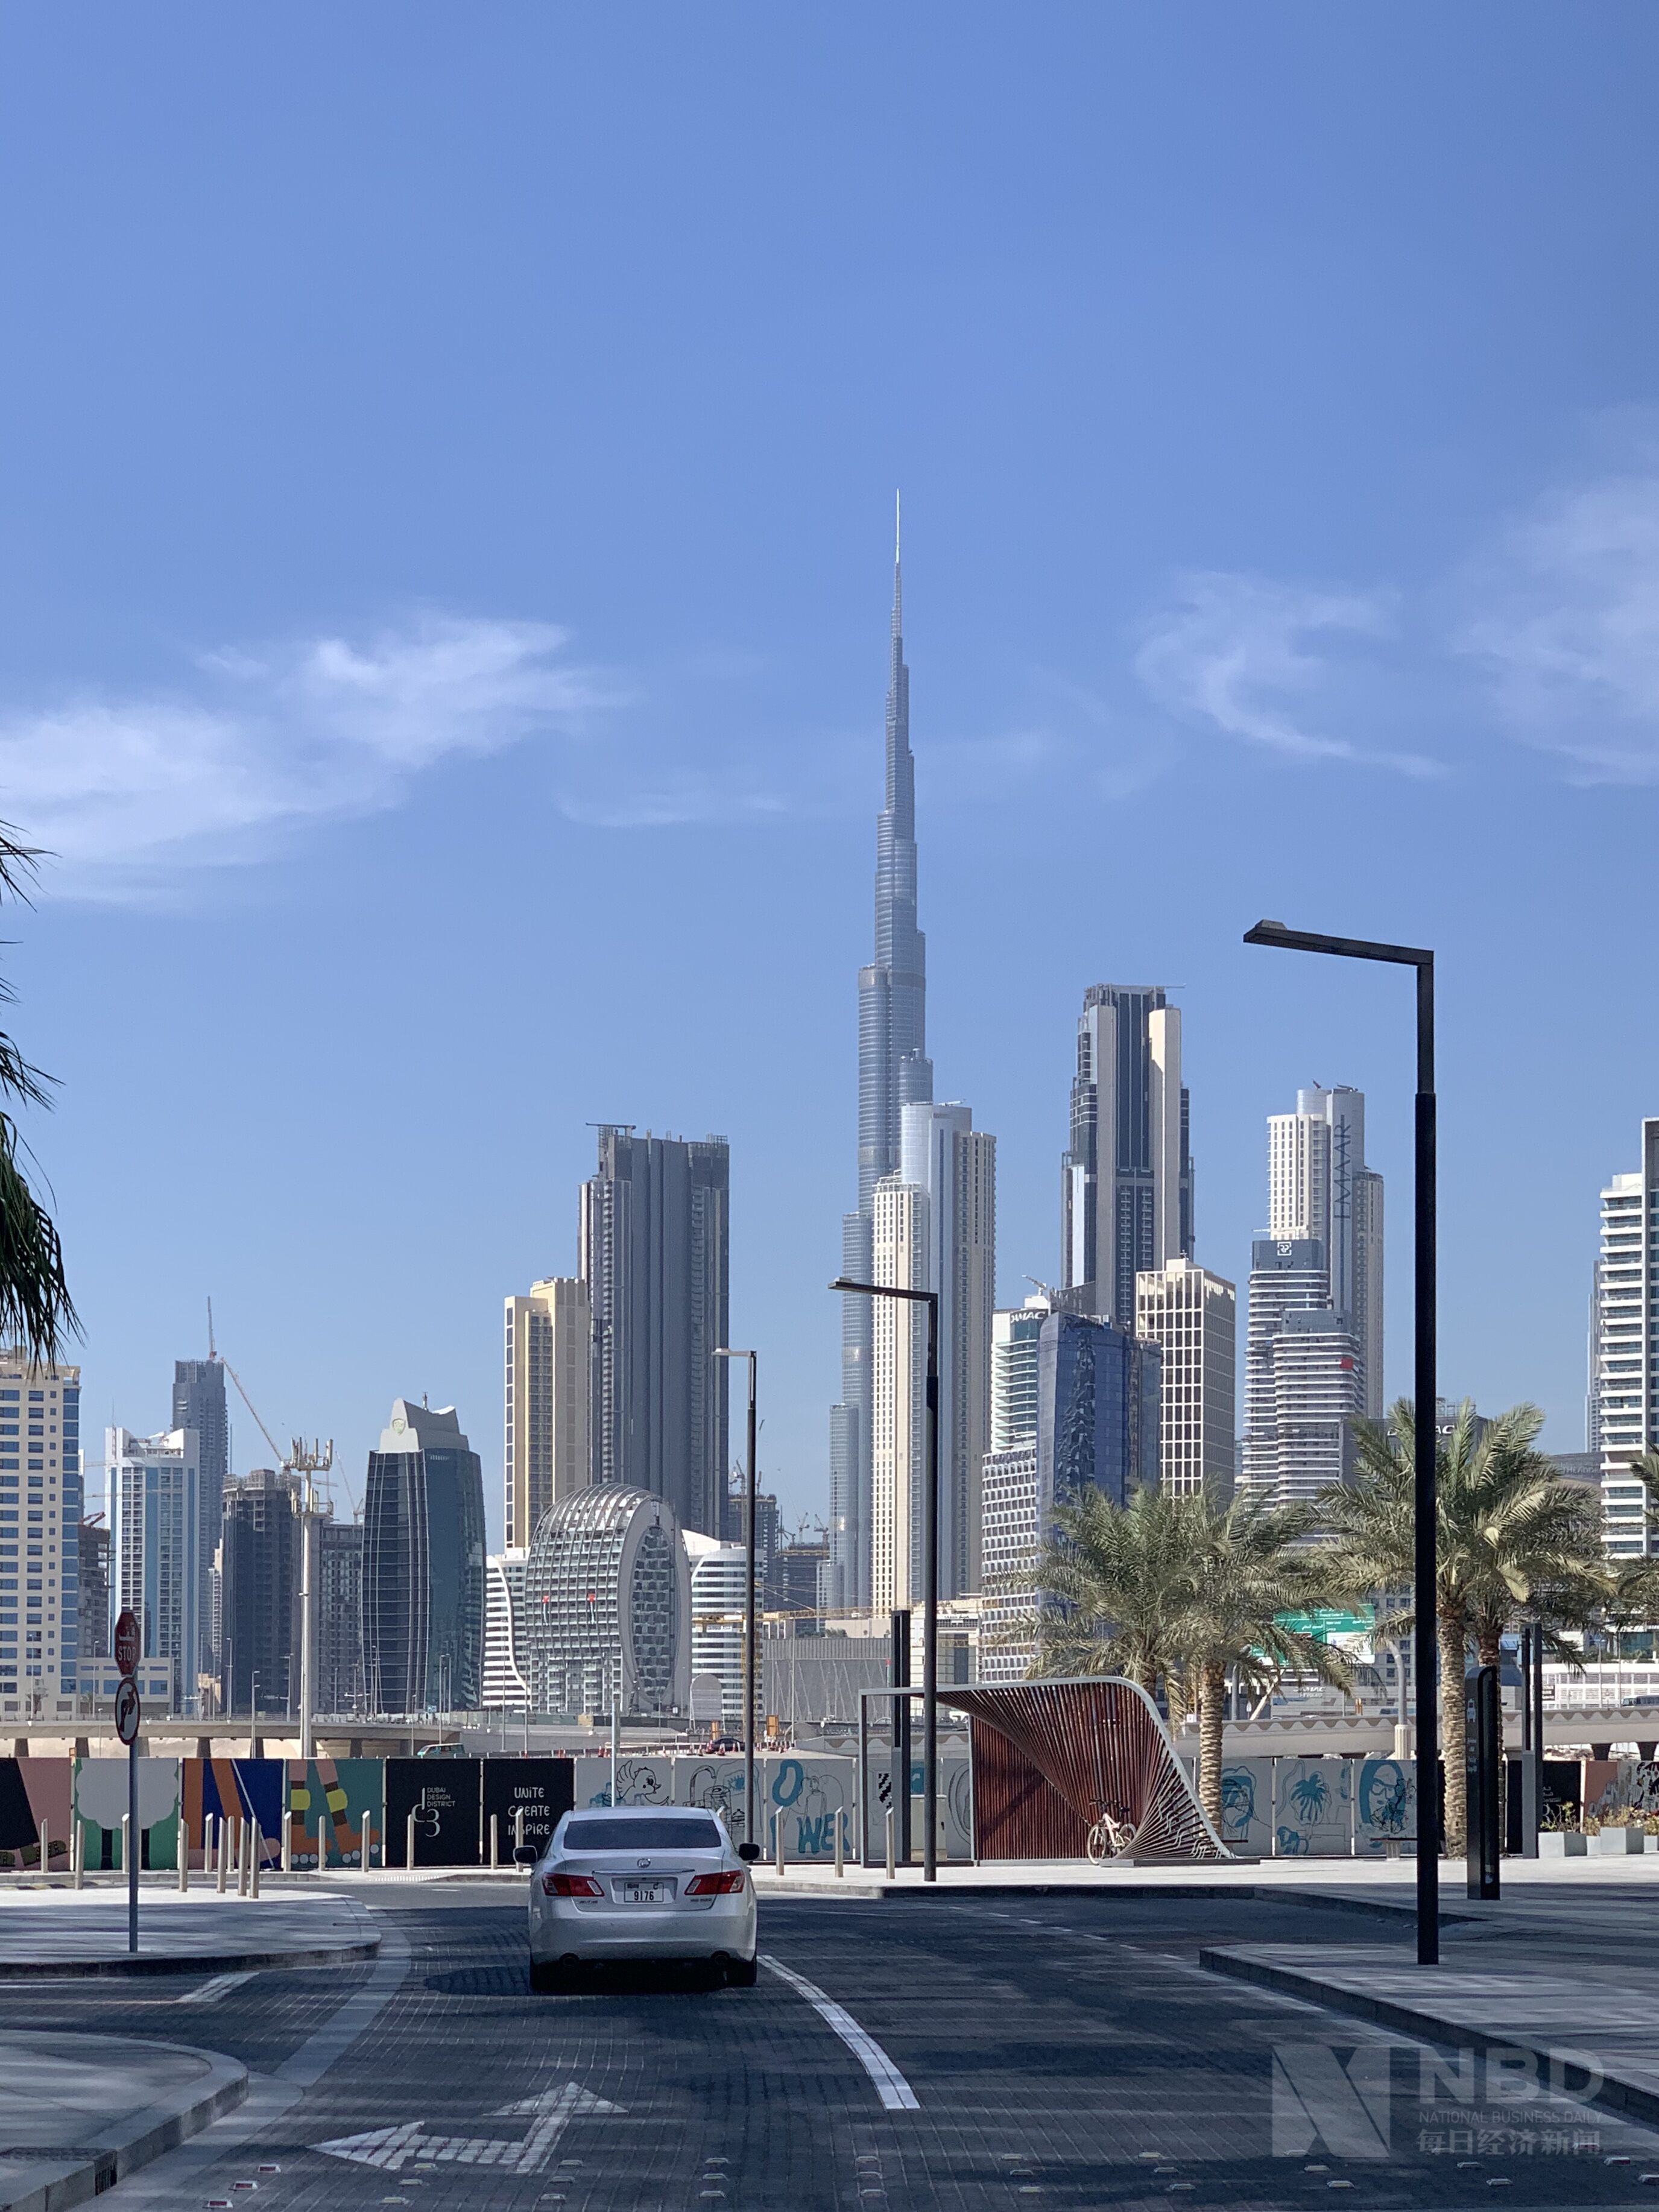 迪拜城区看最高建筑迪拜哈利法塔 每经记者 陈星 摄